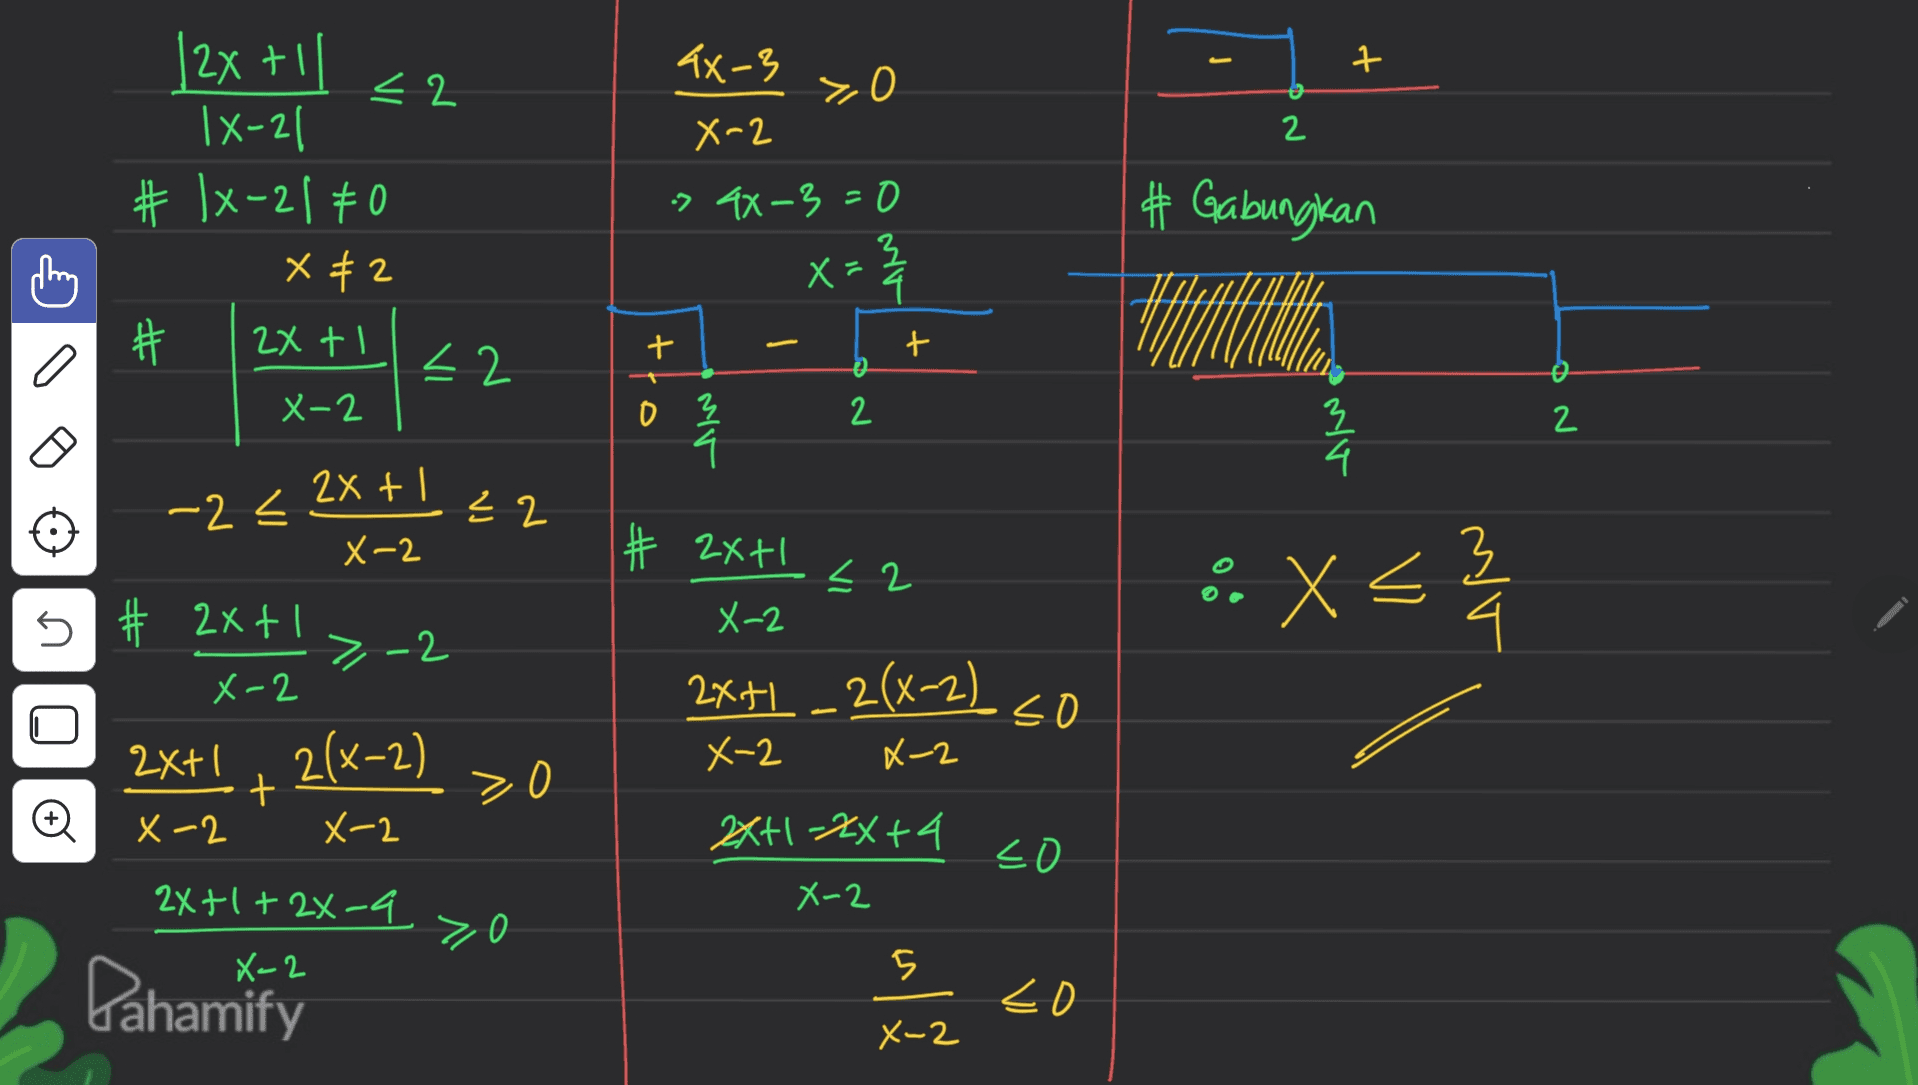 Tx-3 구 yo 0 X-2 2 > 4X-3=0 |2x + 1 < 2 1X-21 # 1x-21 0 X #2 # 2x tl <2 X-2 X= Ž # Gabungkan ht 2 + + e ö 0 2 Mo 2 로 4 -2< 2x + 근 2 X-2 # 2x+1 X-2 < 2 é. x < X 3 n >-2 - # 2x + 1 X-2 2x+1 2(x-2) + X-2 X-2 2X+1 -2(x-2) . so X-2 X-2 > 0 2x+1-2x + 4 so 2x+1+2×-9 X-2 zo 5 Pahamify <o X-2 